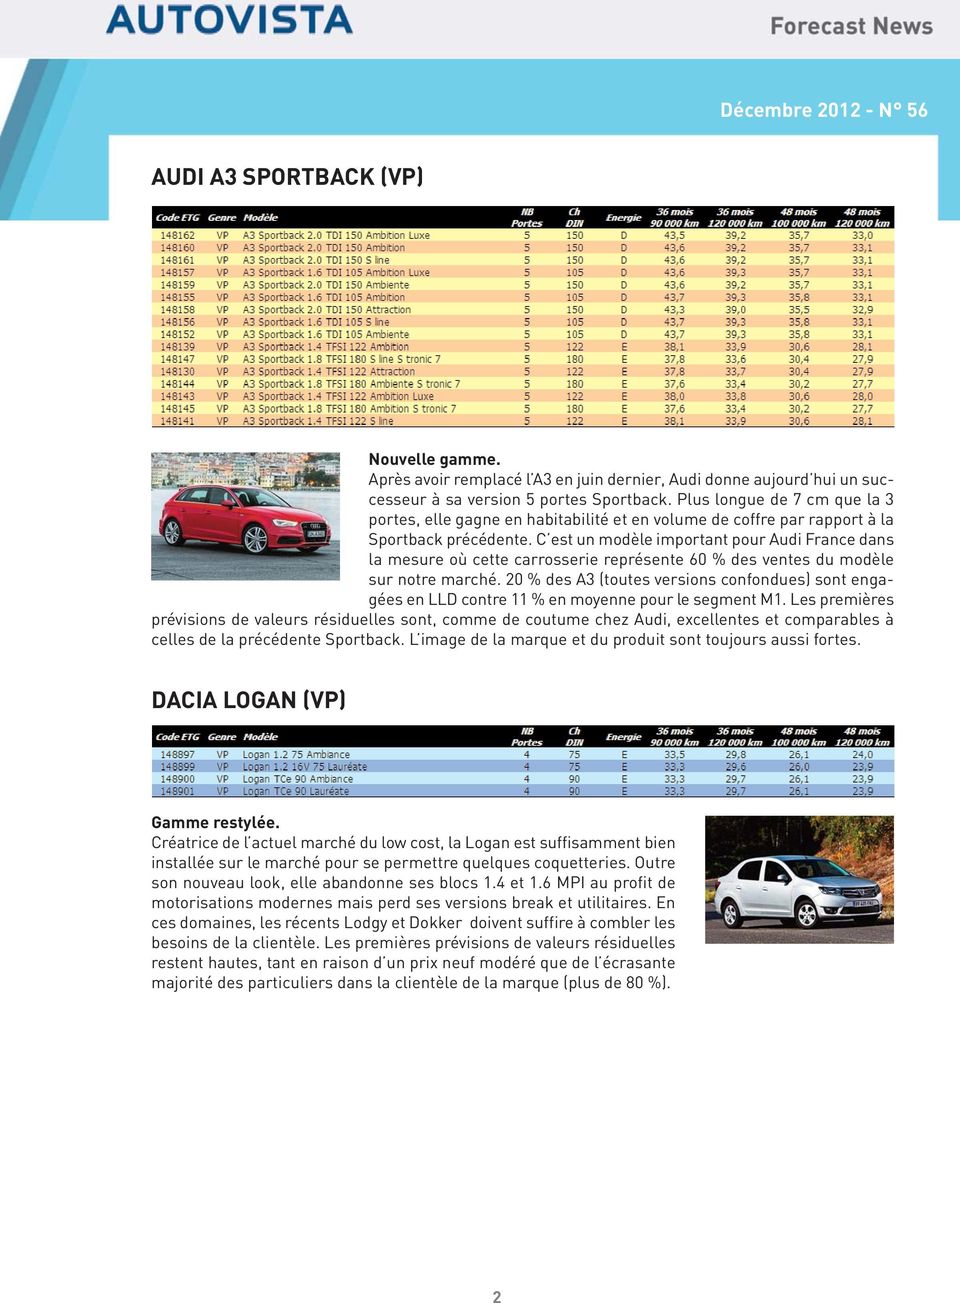 C est un modèle important pour Audi France dans la mesure où cette carrosserie représente 60 % des ventes du modèle sur notre marché.